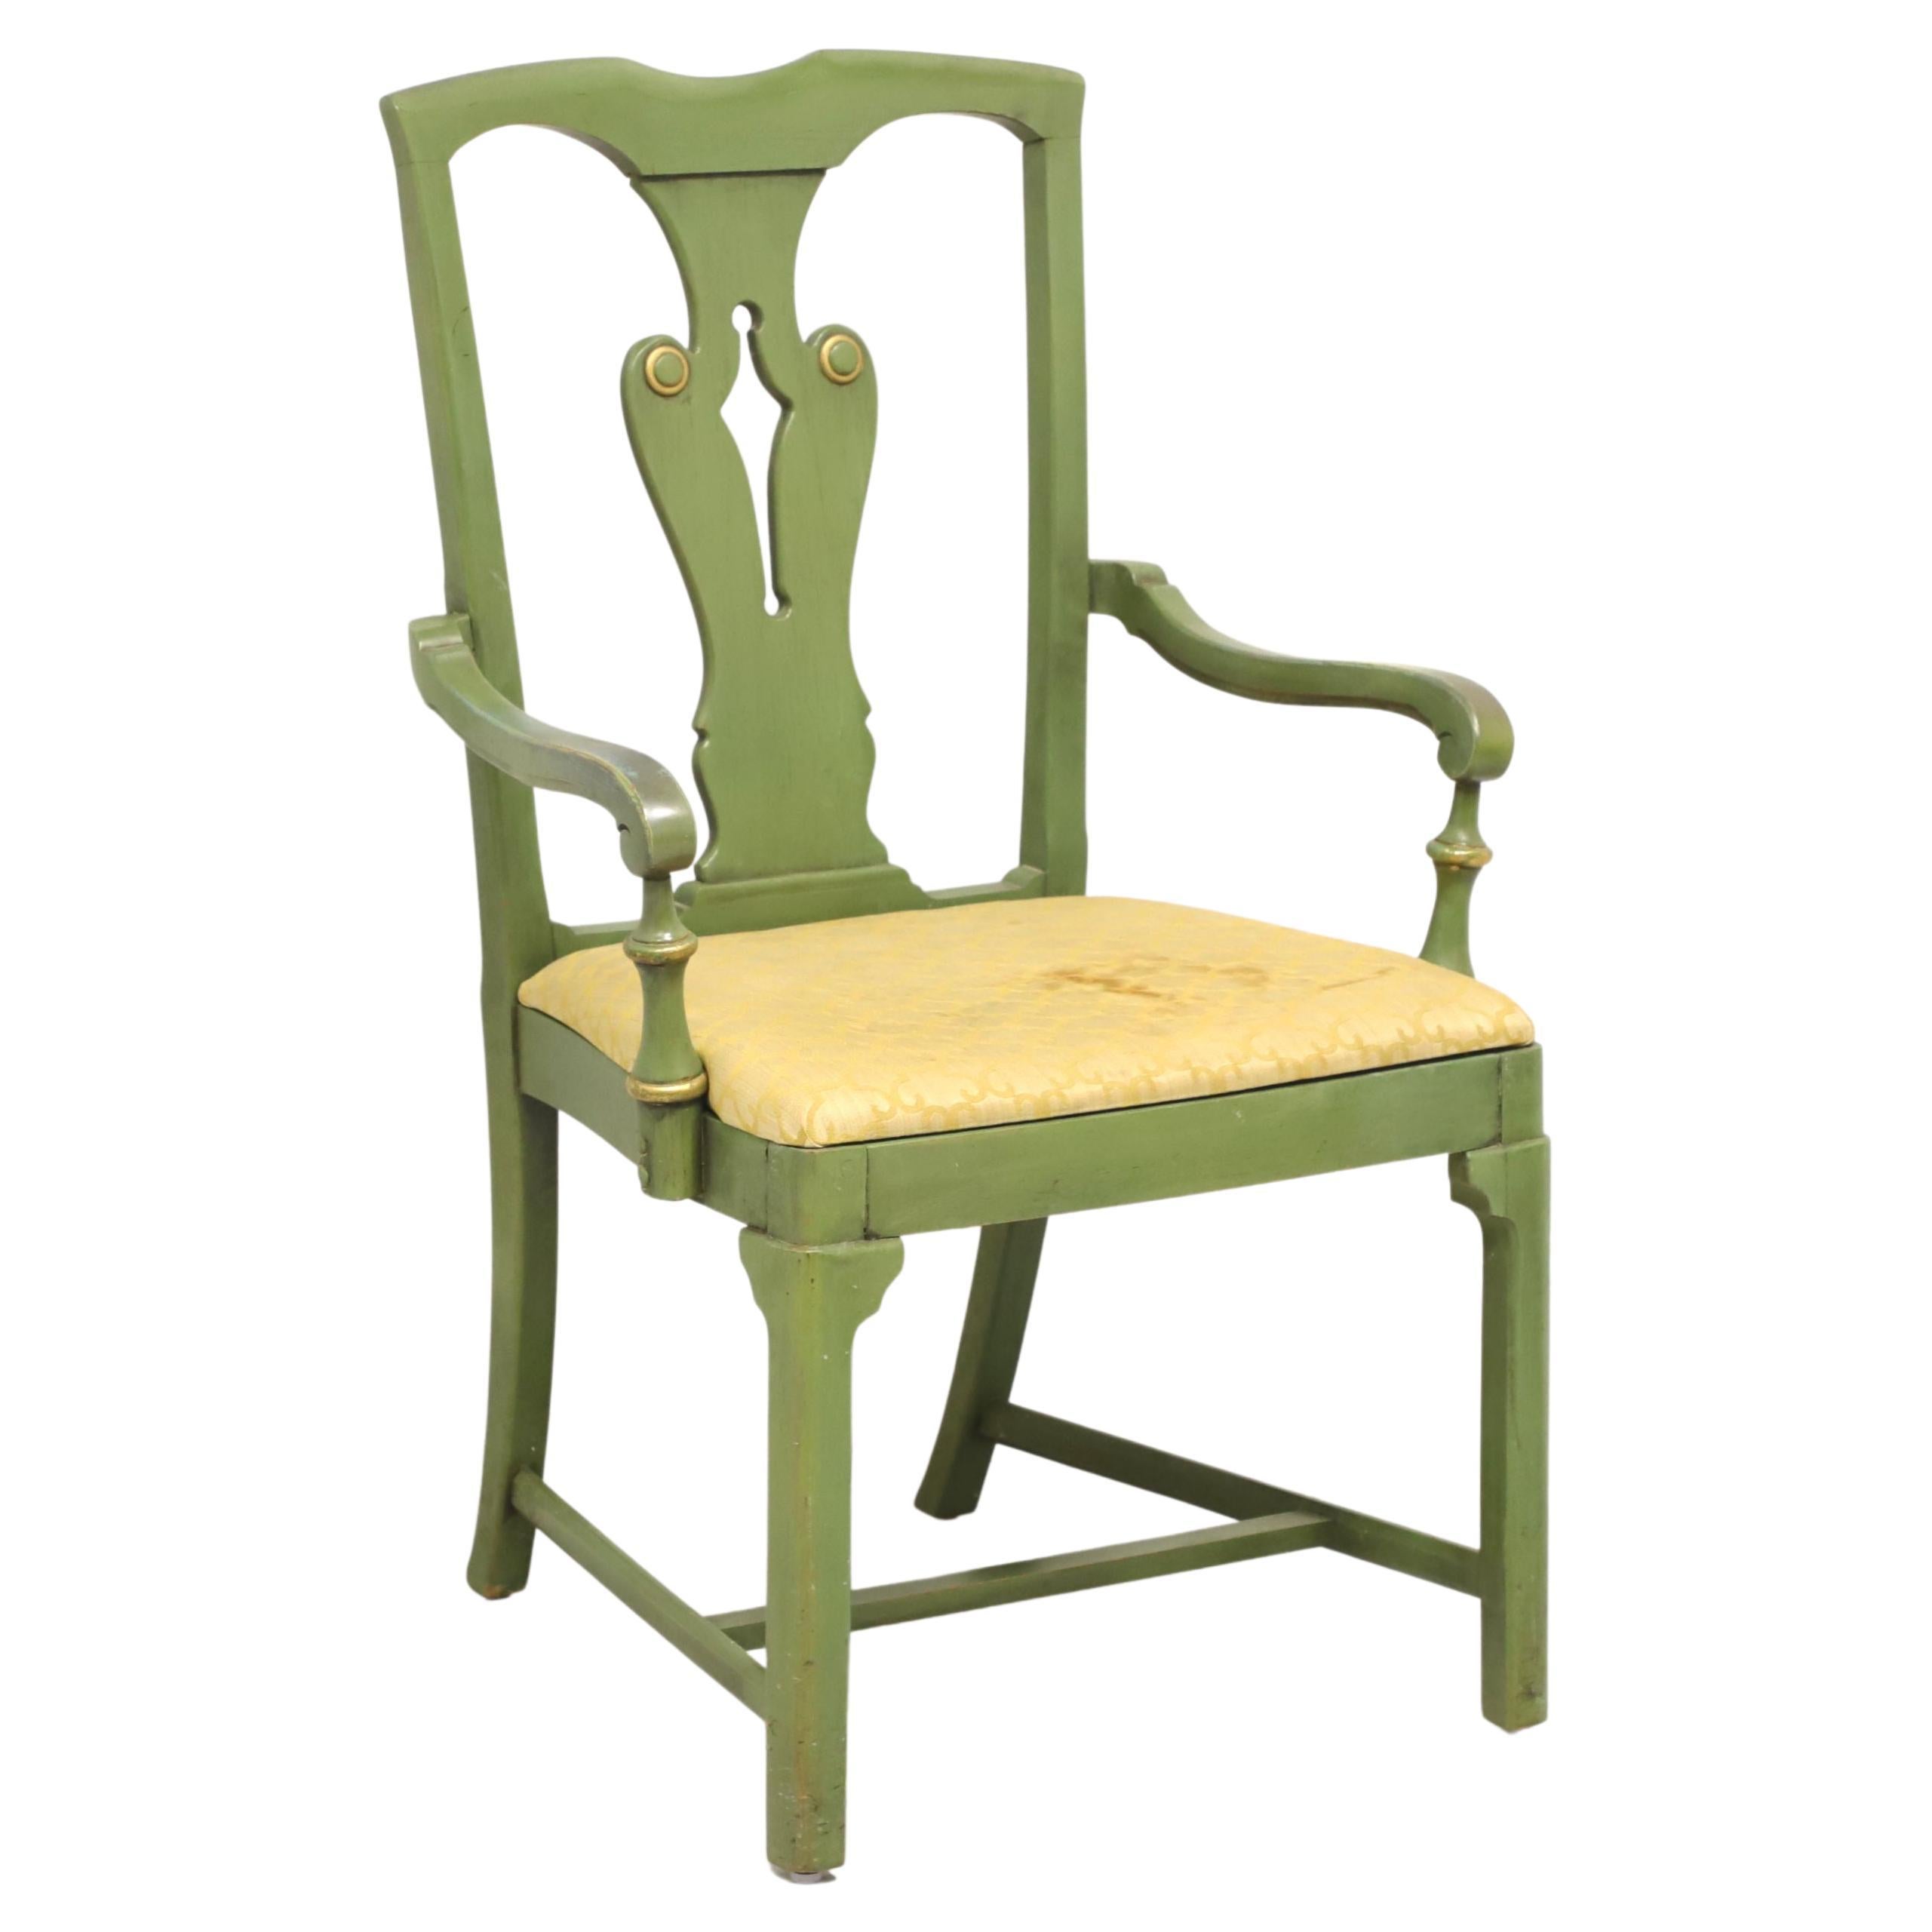 Grün lackierter Sessel im Bauernhausstil mit gealterter Oberfläche